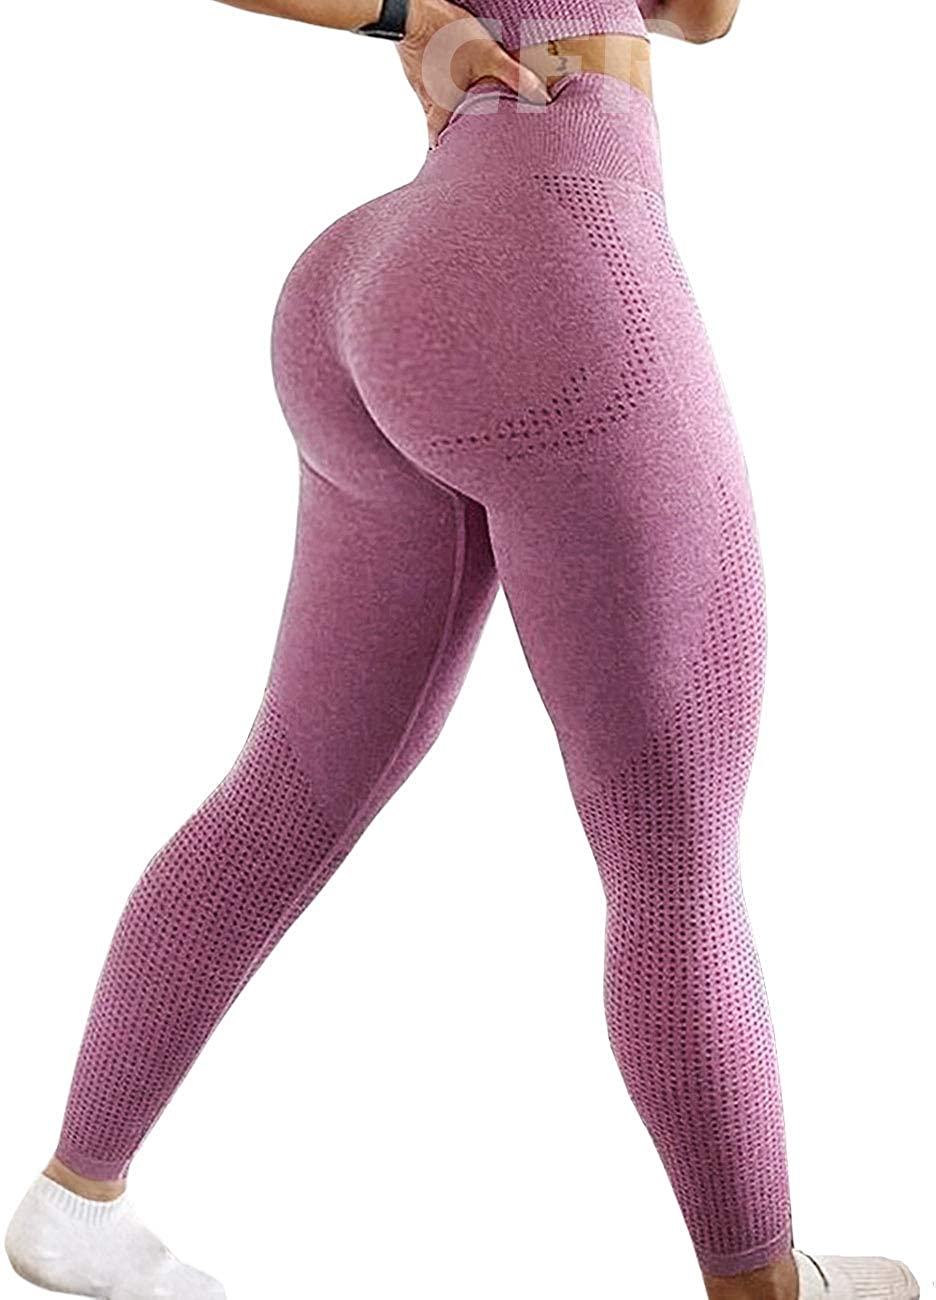 CFR Women Workout Leggings High Waist Scrunch Peach Butt Lifting Tummy  Control Gym Sport Fitness Tights